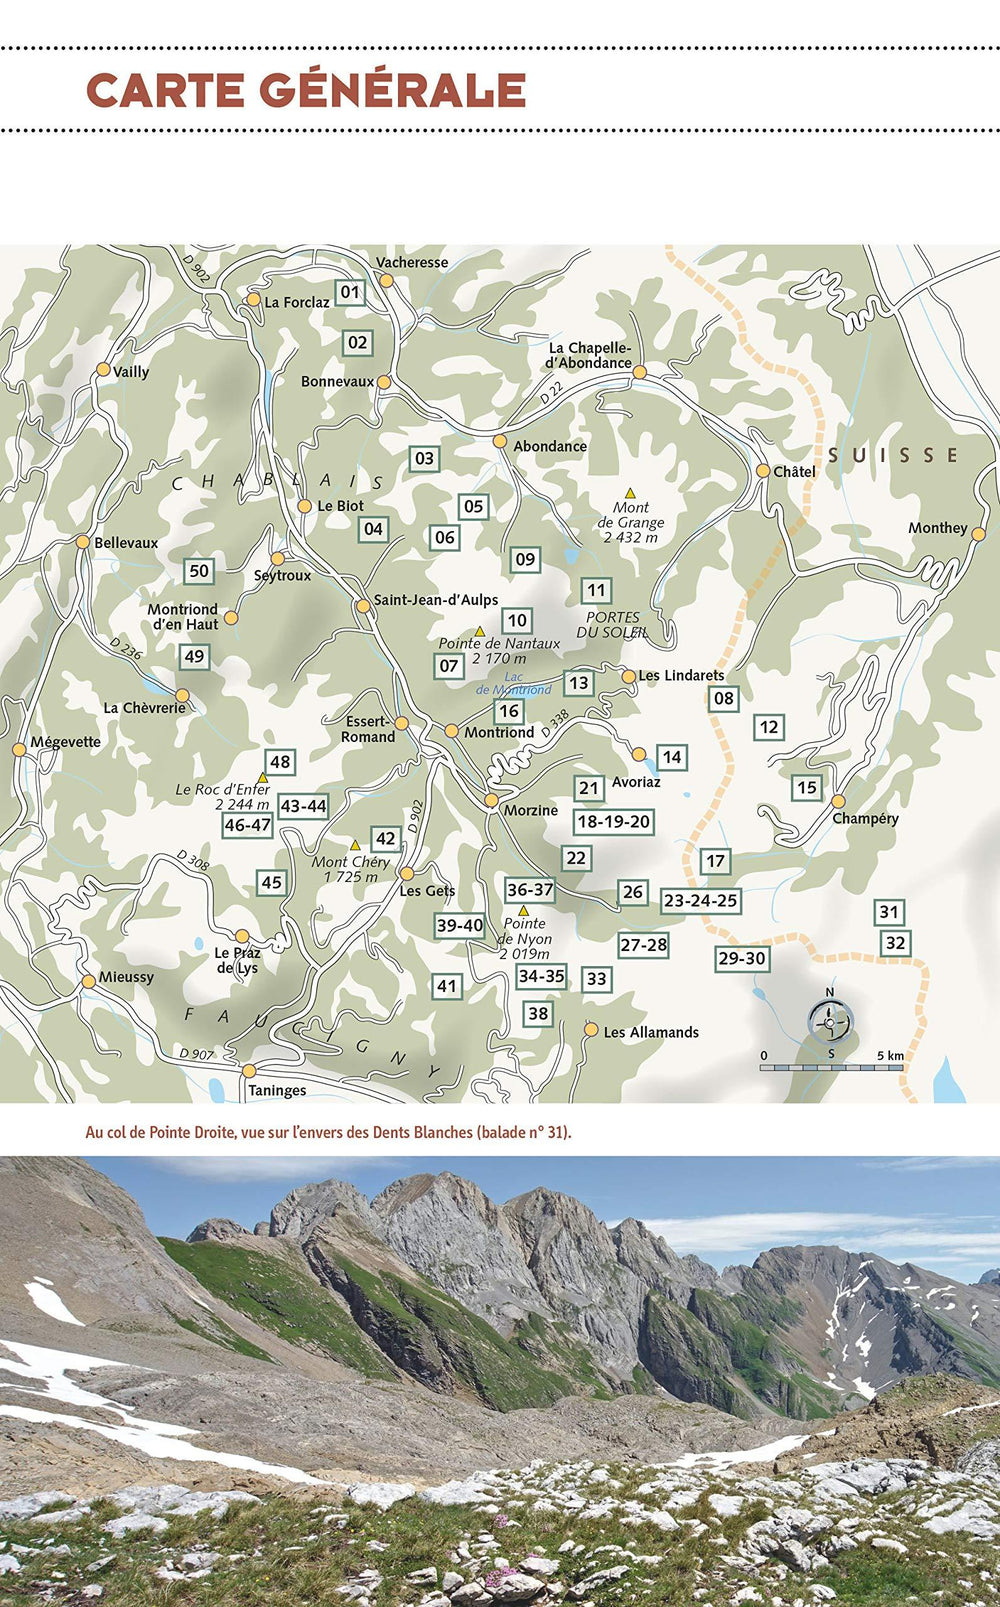 Guide de randonnées - Haut-Chablais | Glénat guide de randonnée Glénat 